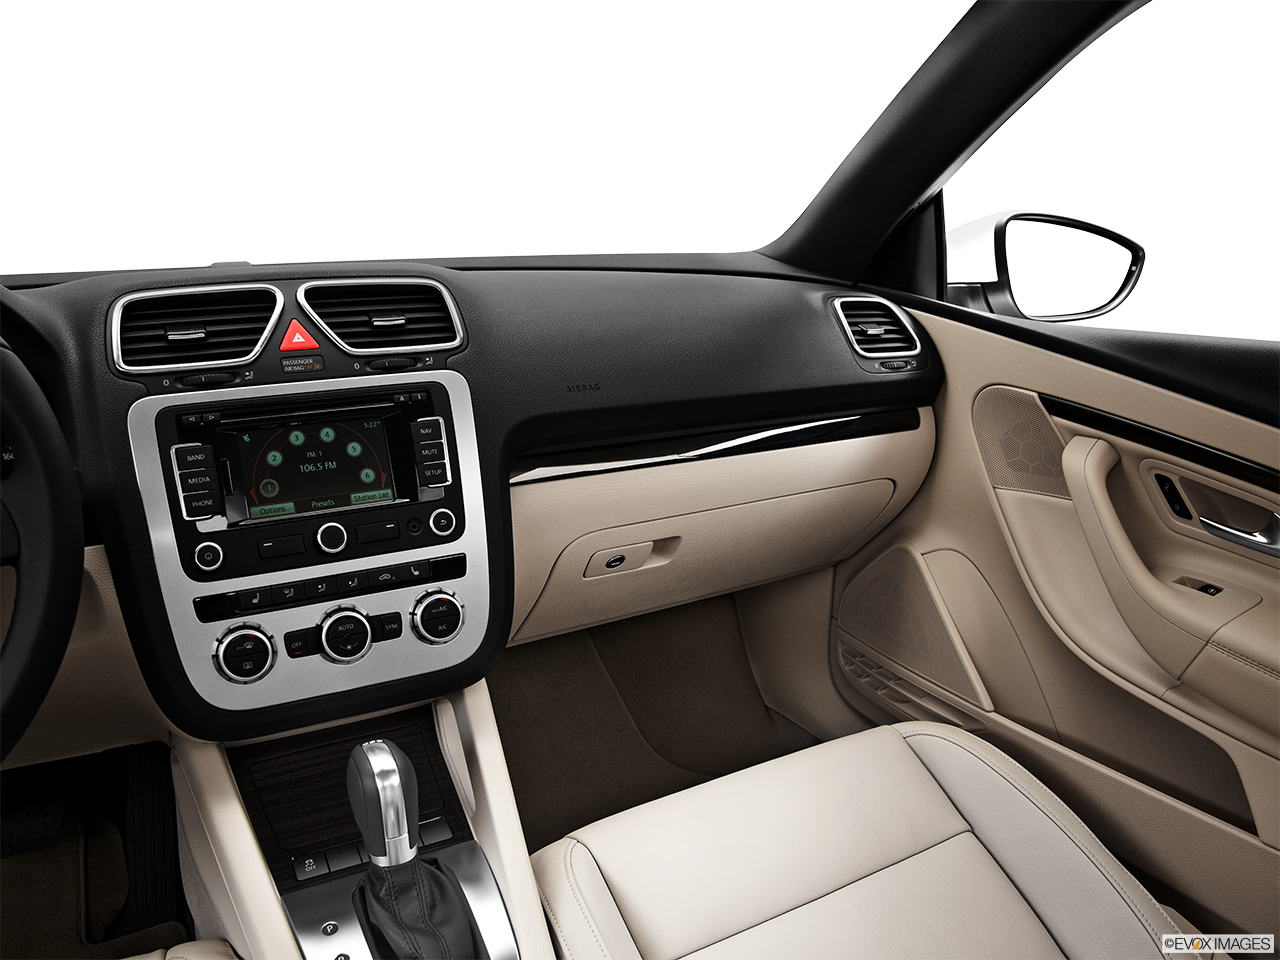 2013 Volkswagen Eos Lux Center Console/Passenger Side. 